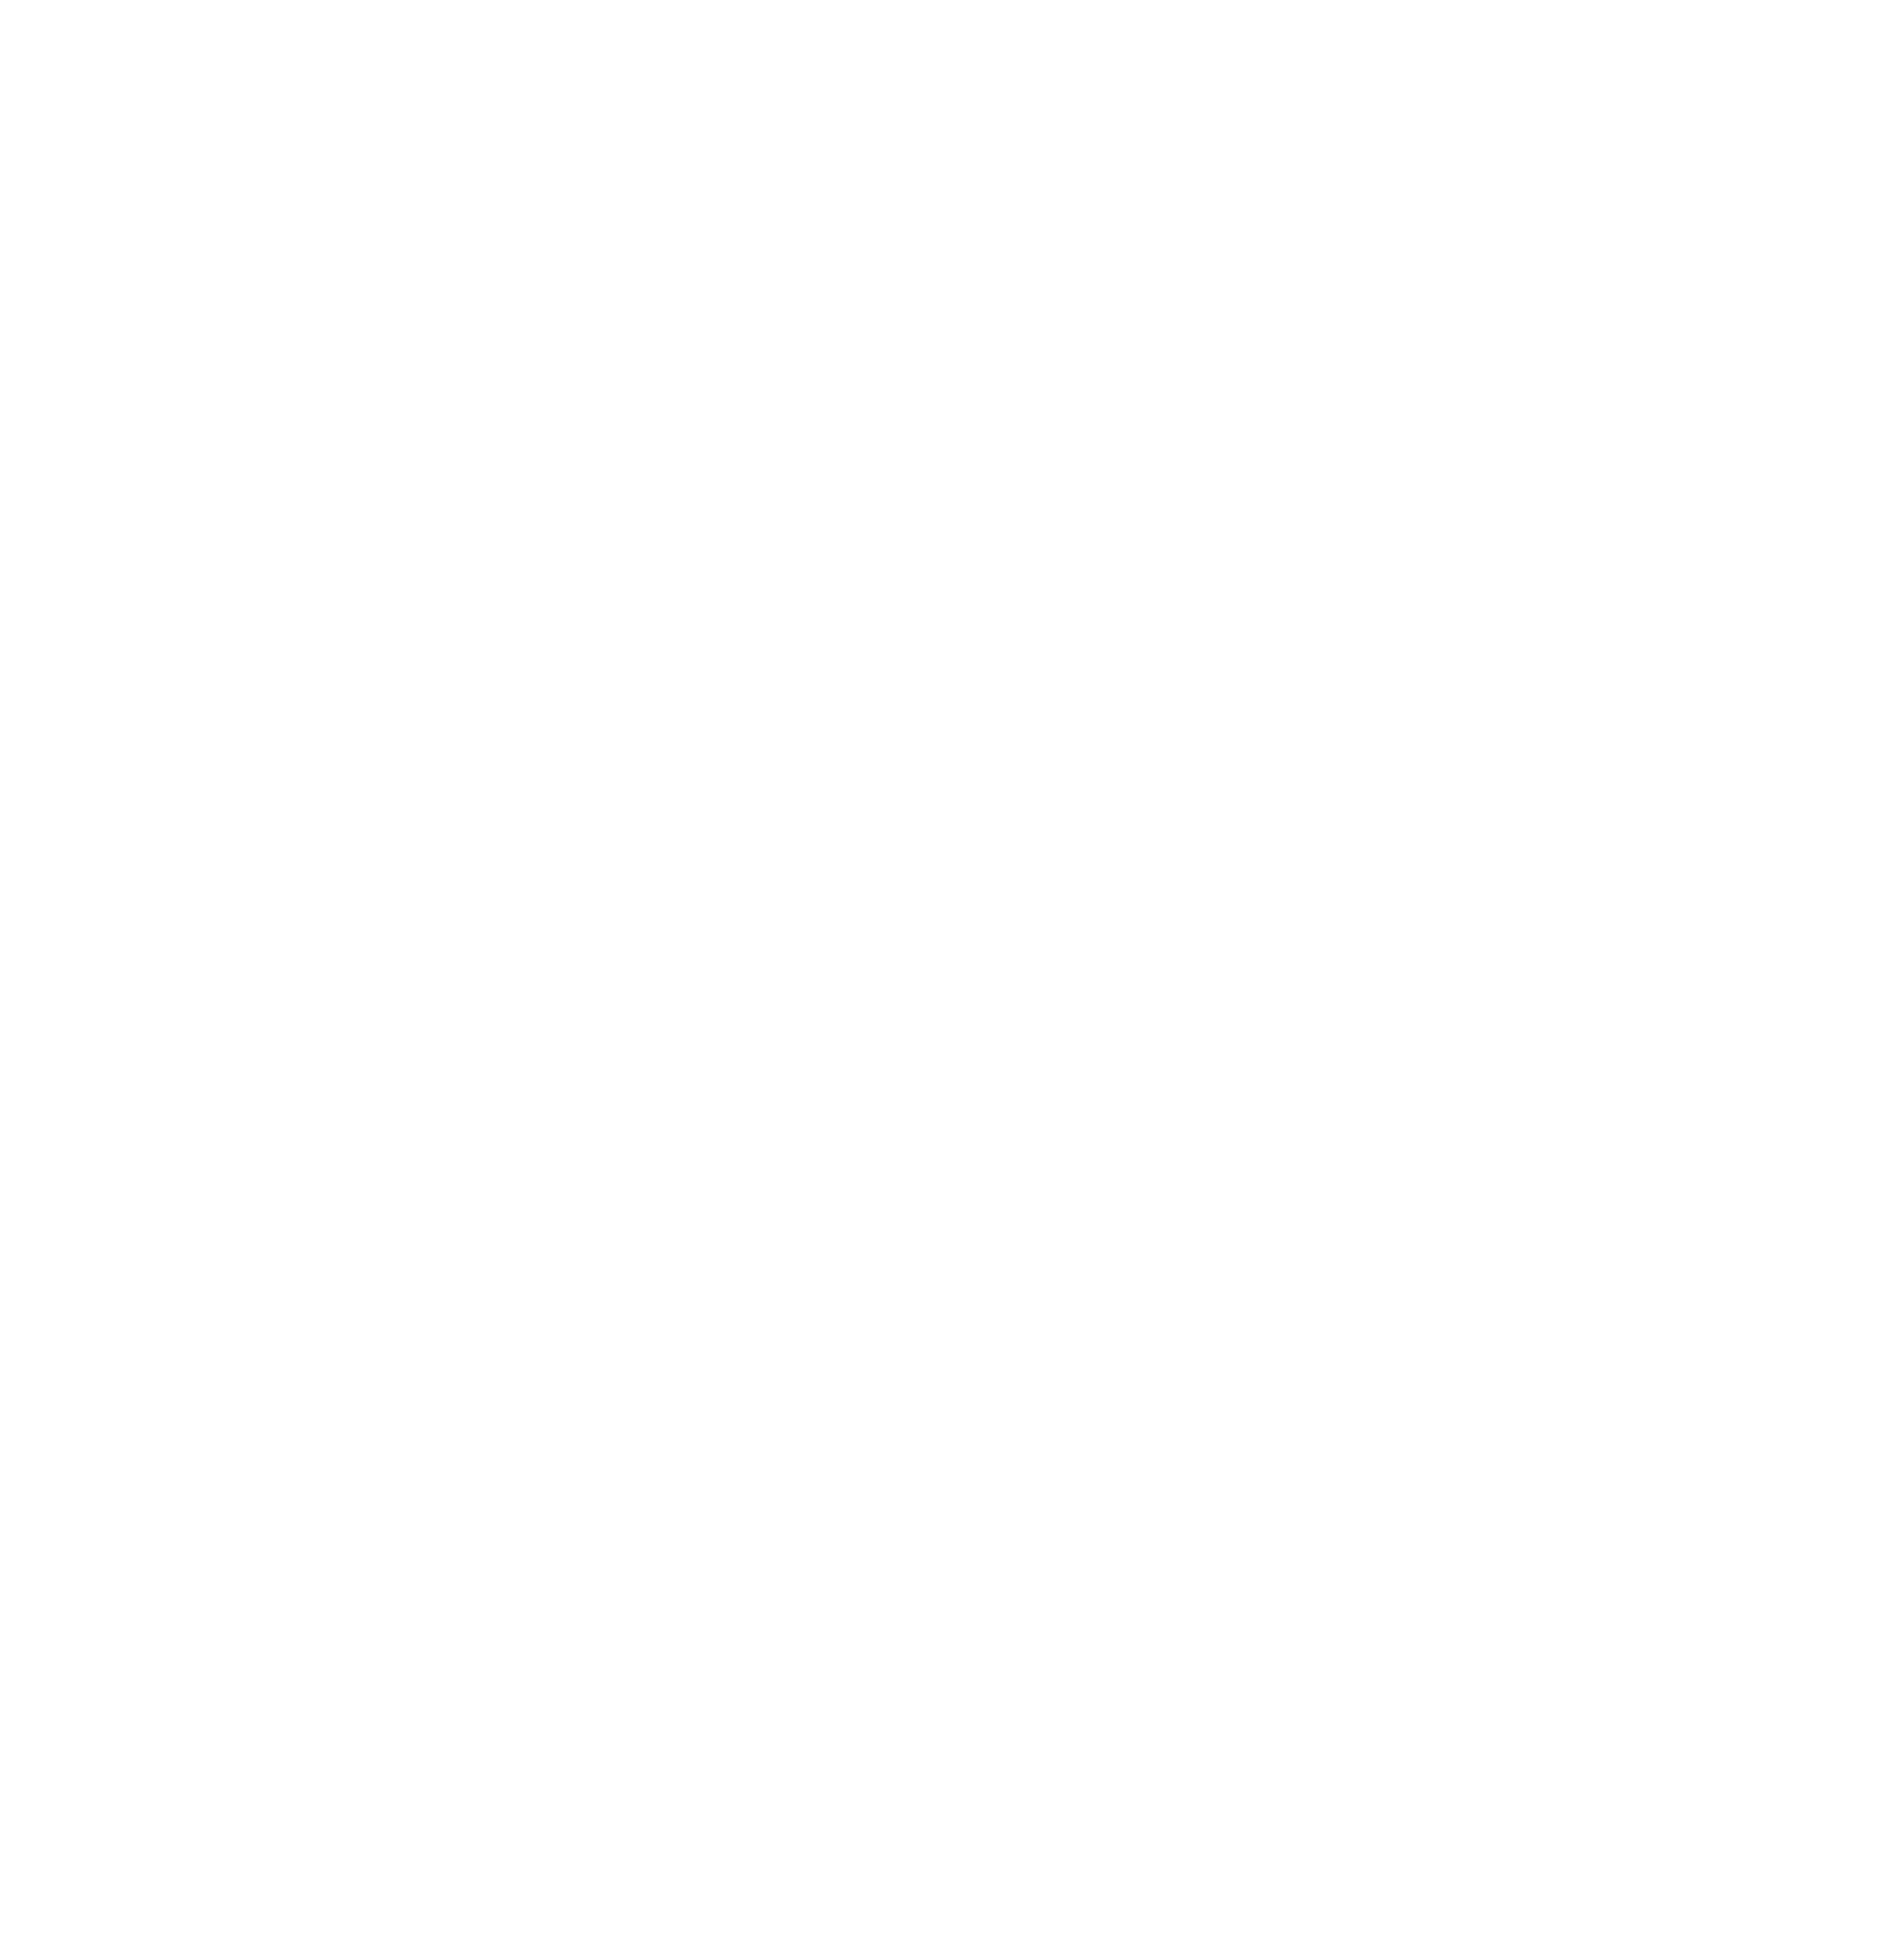 福岡のホームページ制作・システム開発会社 KIS株式会社のXへのリンク